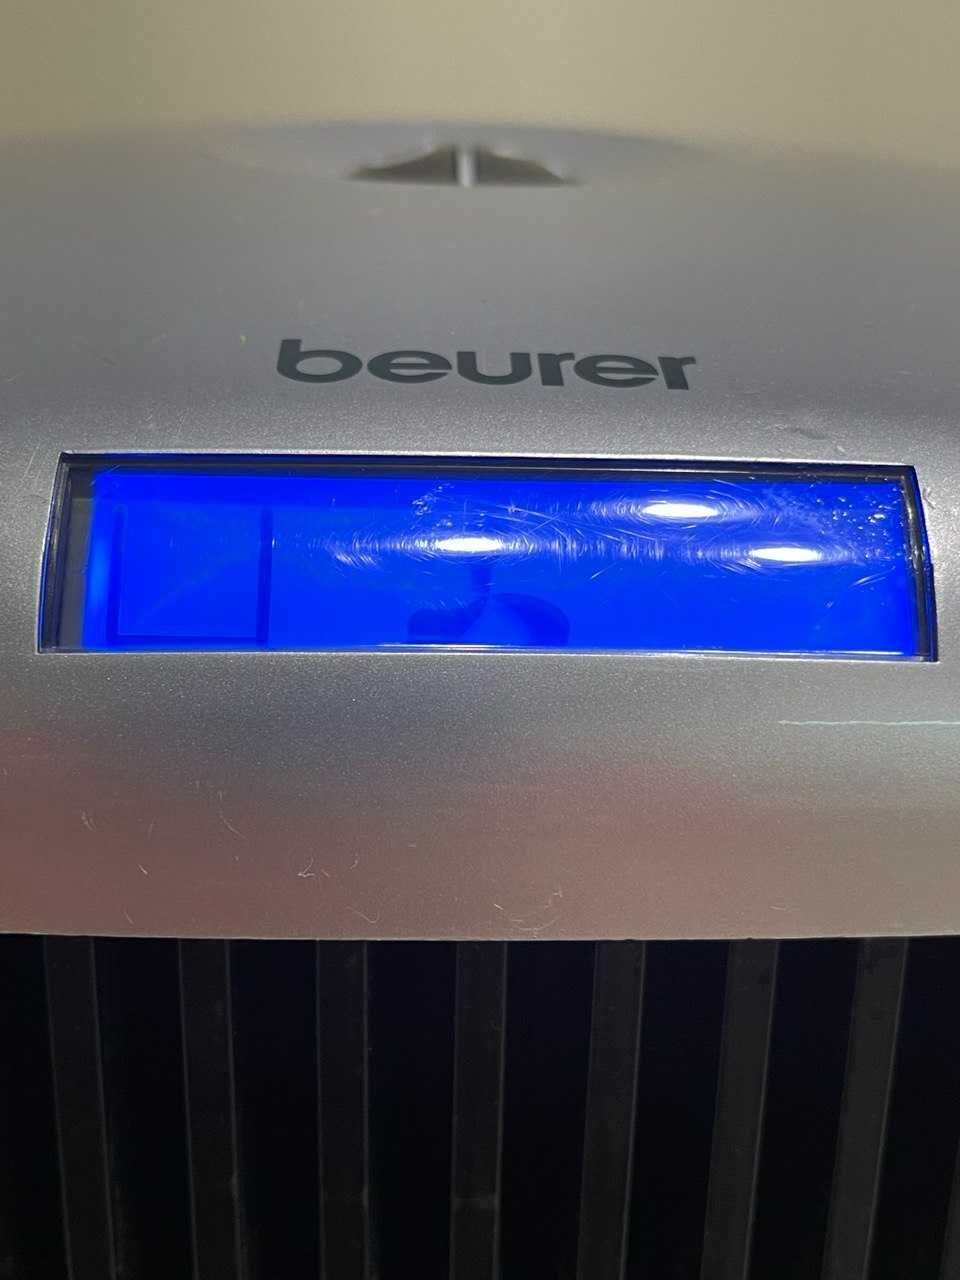 Очищувач повітря Beurer LW 110